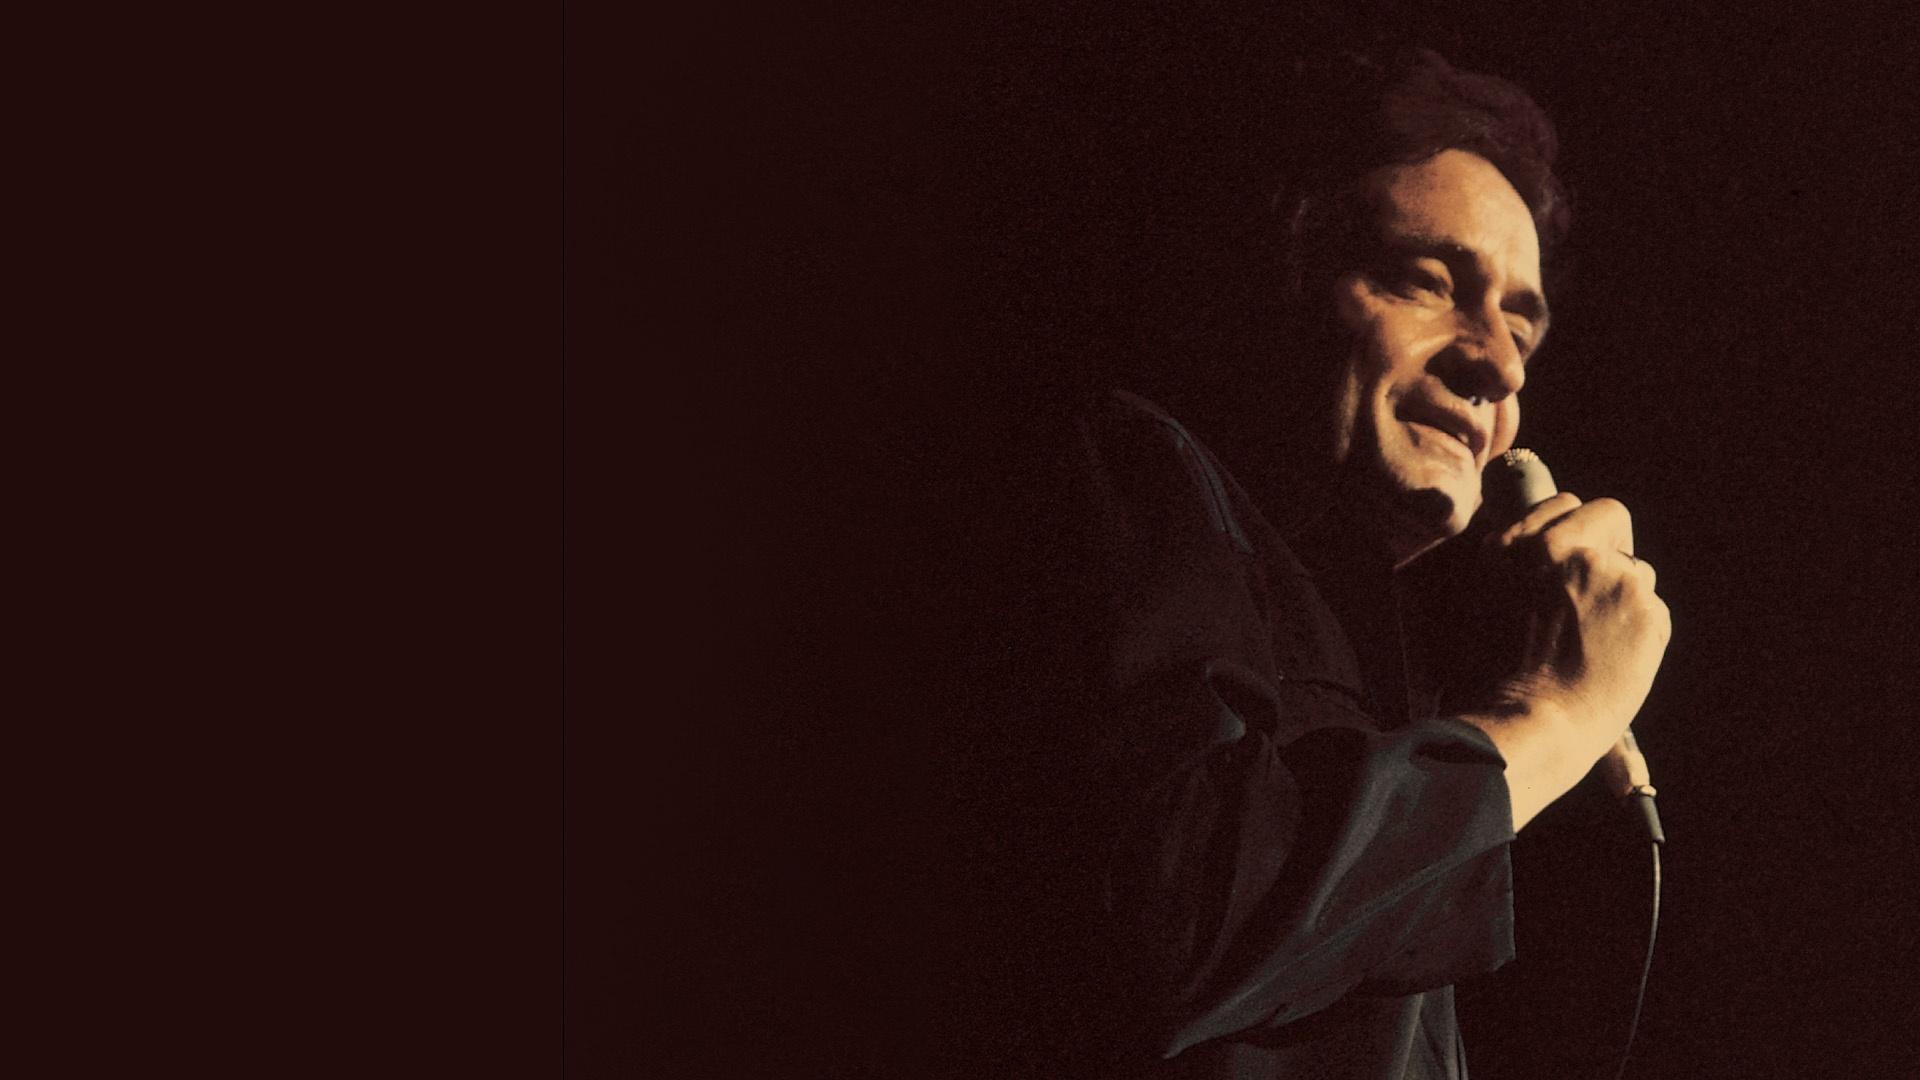 Johnny Cash: Man in Black – Live in Denmark 1971